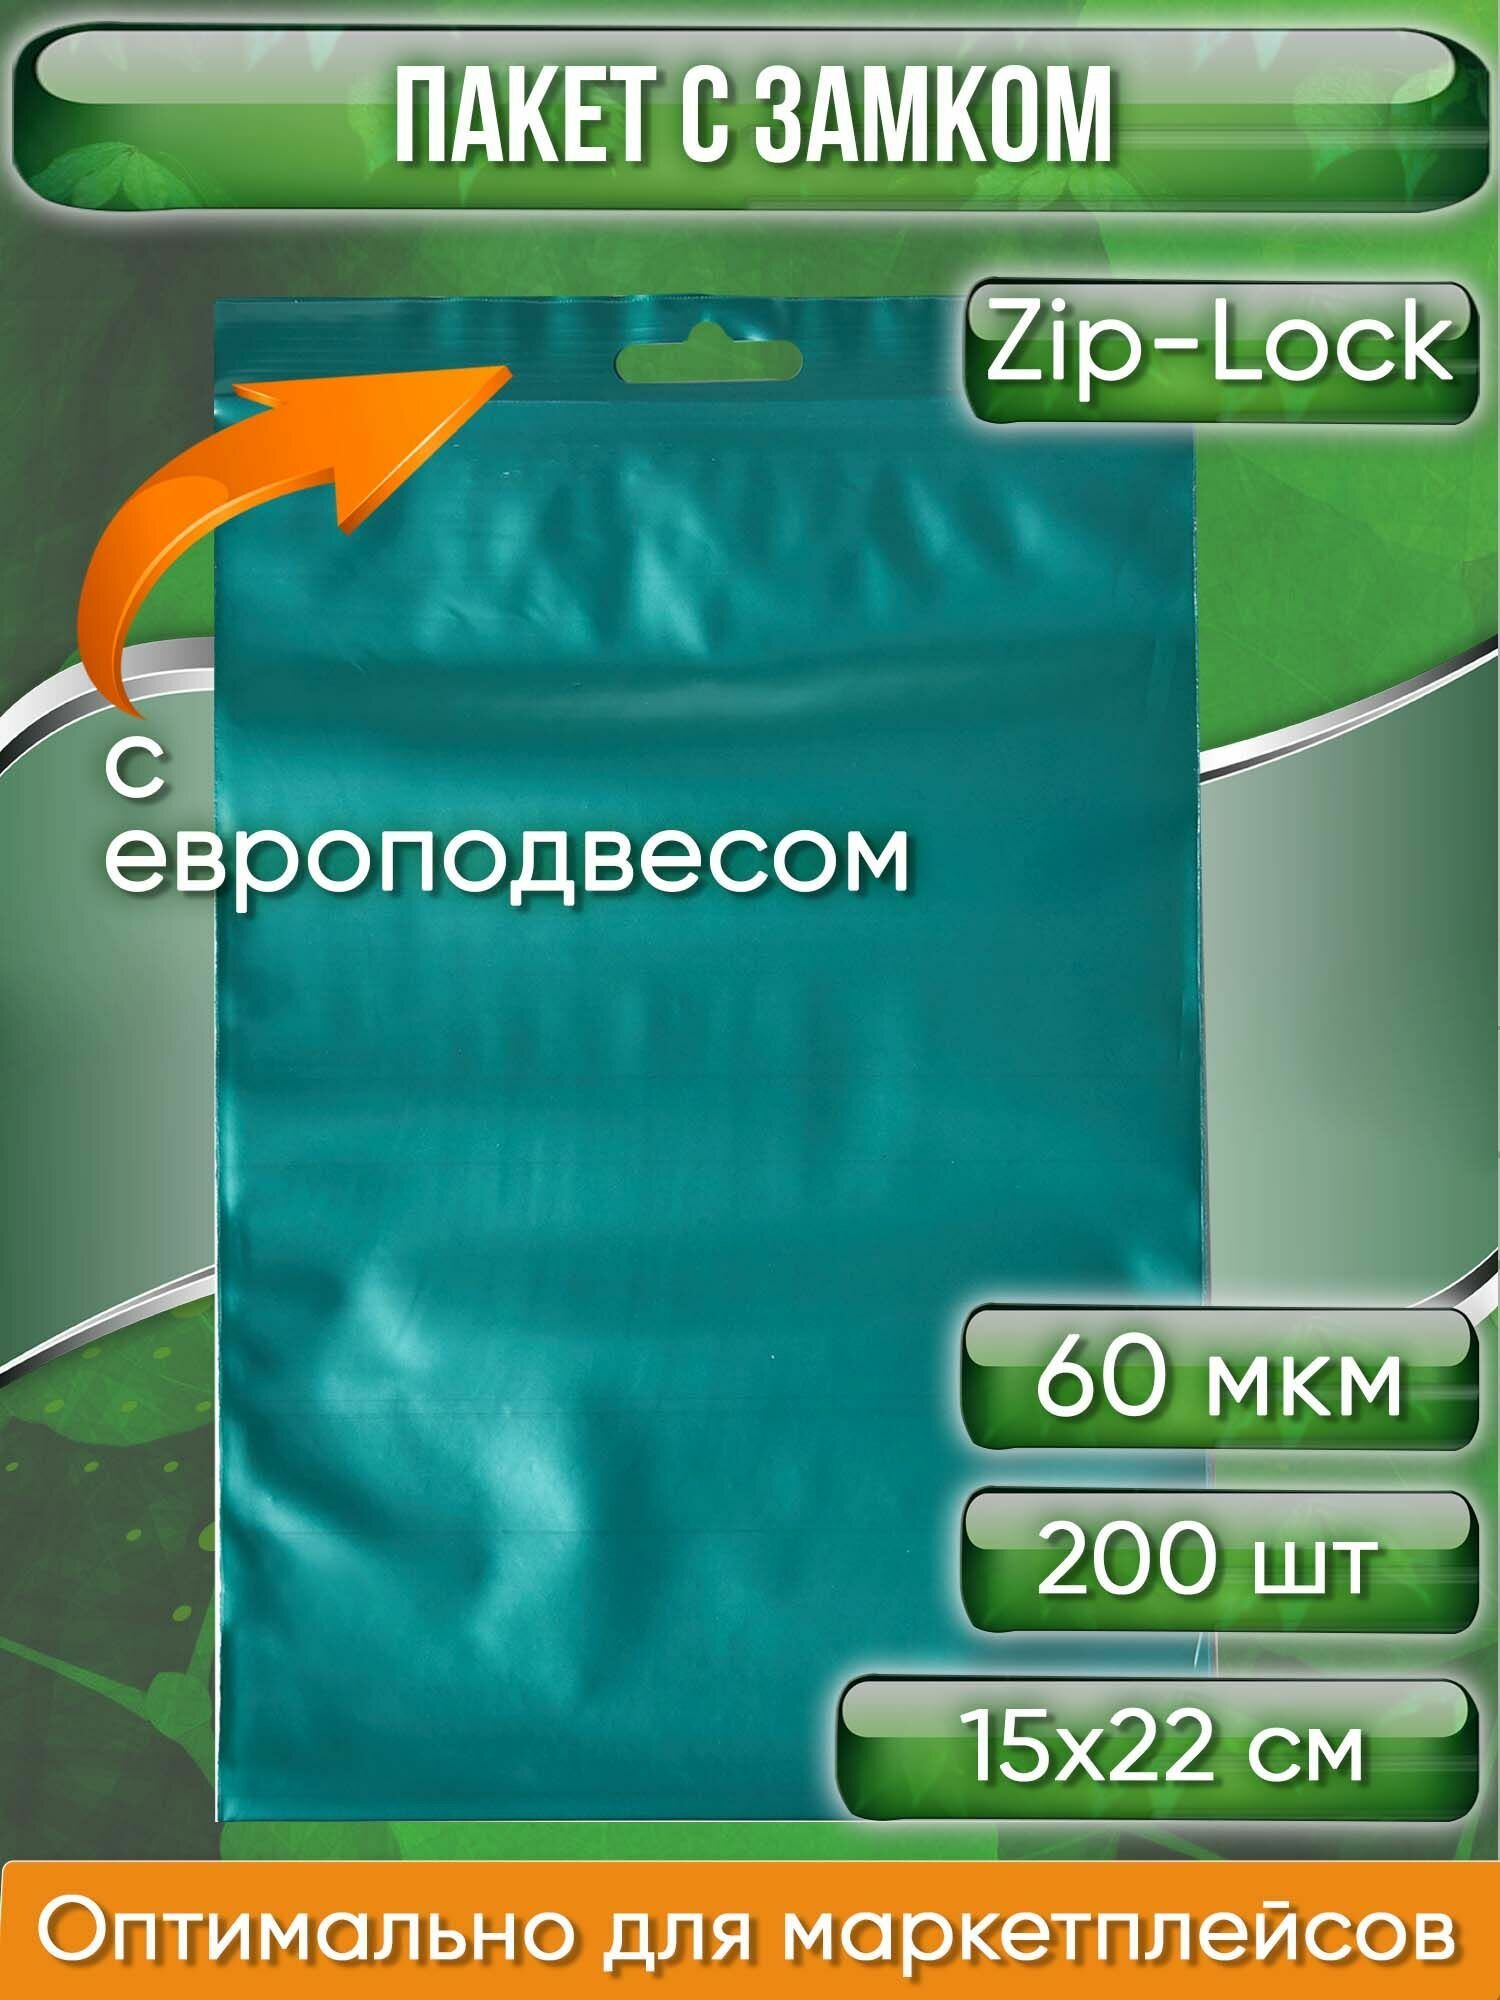 Пакет с замком Zip-Lock (Зип лок), 15х22 см, 60 мкм, с европодвесом, сверхпрочный, зеленый металлик, 200 шт.